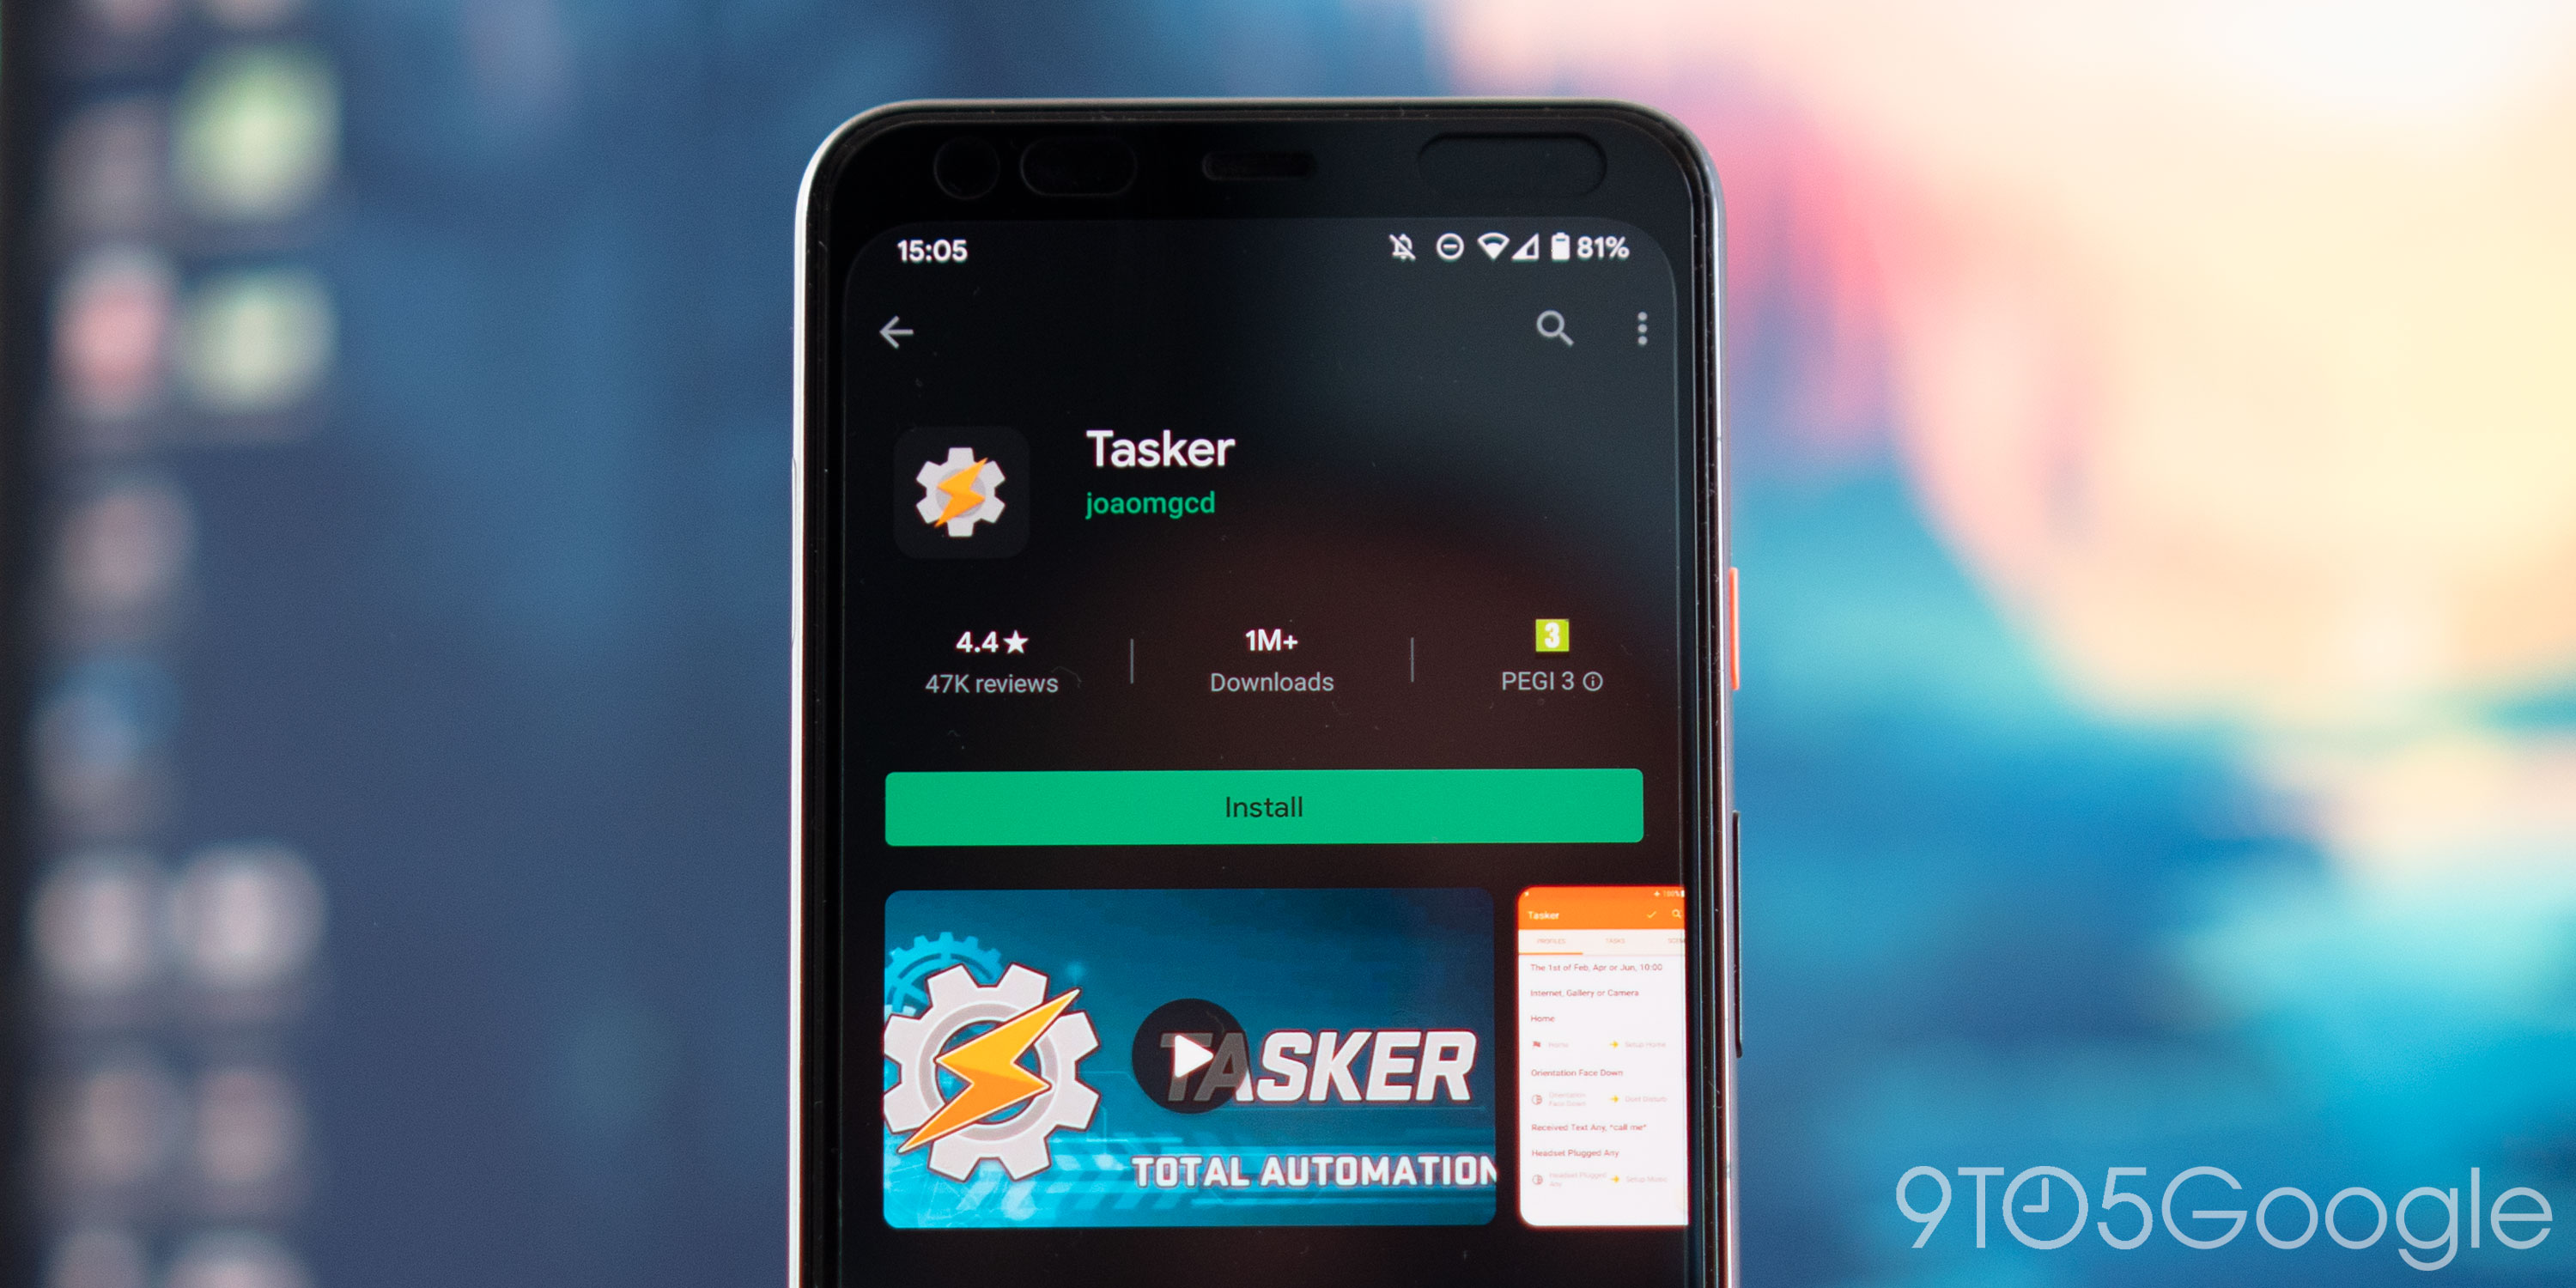 Udtale tønde Urter Tasker adds double-tap gesture support for activating events - 9to5Google